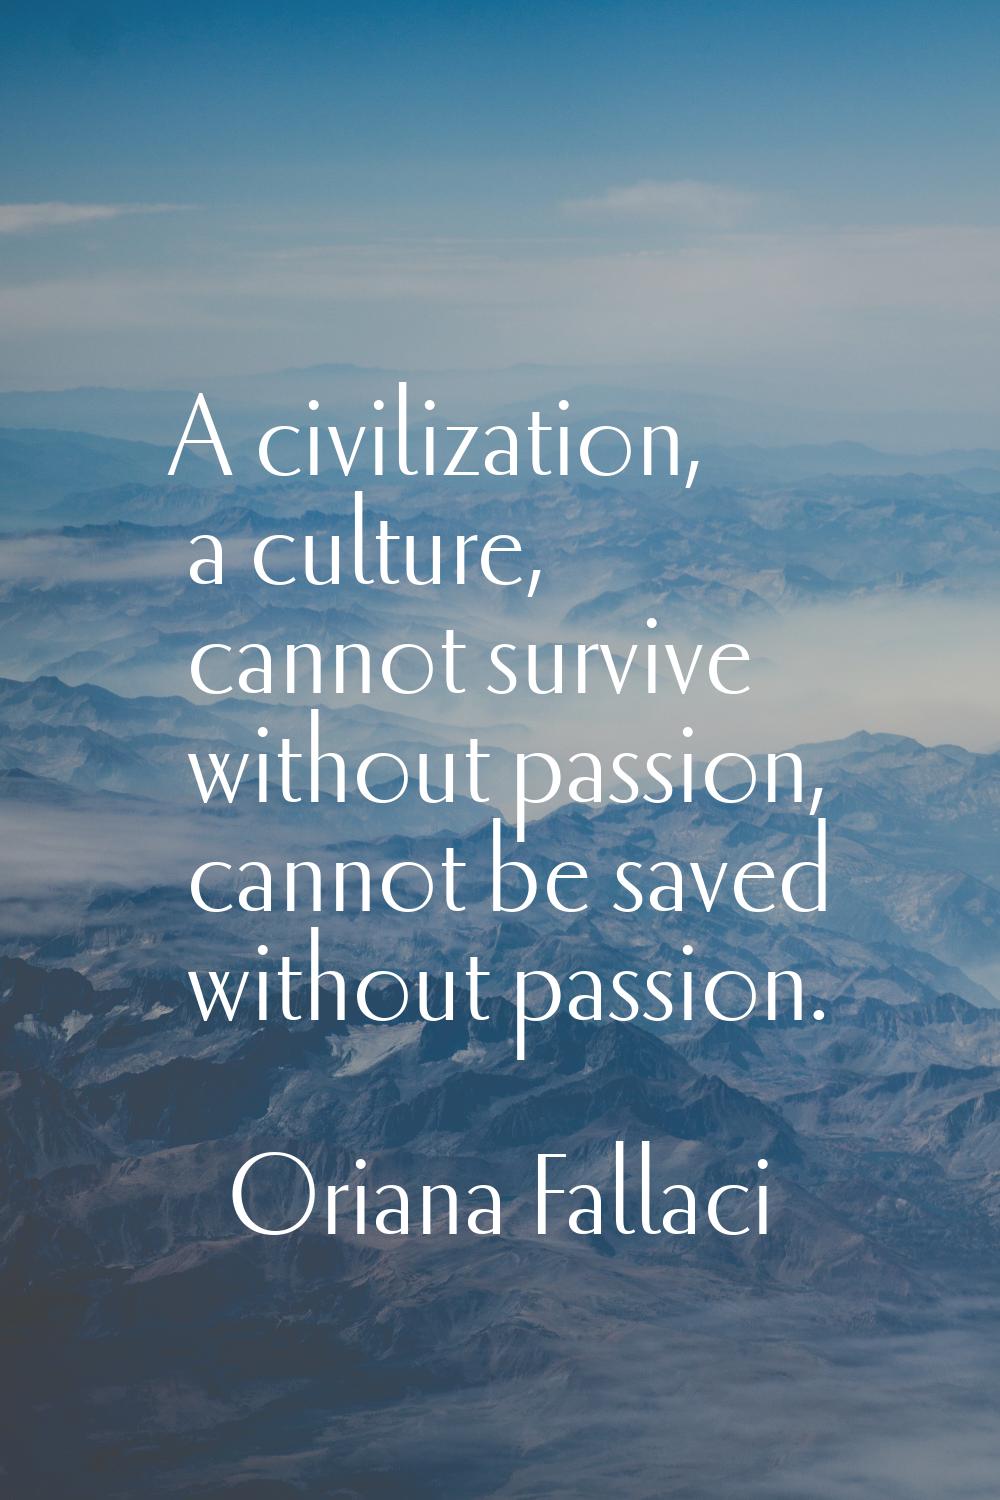 A civilization, a culture, cannot survive without passion, cannot be saved without passion.